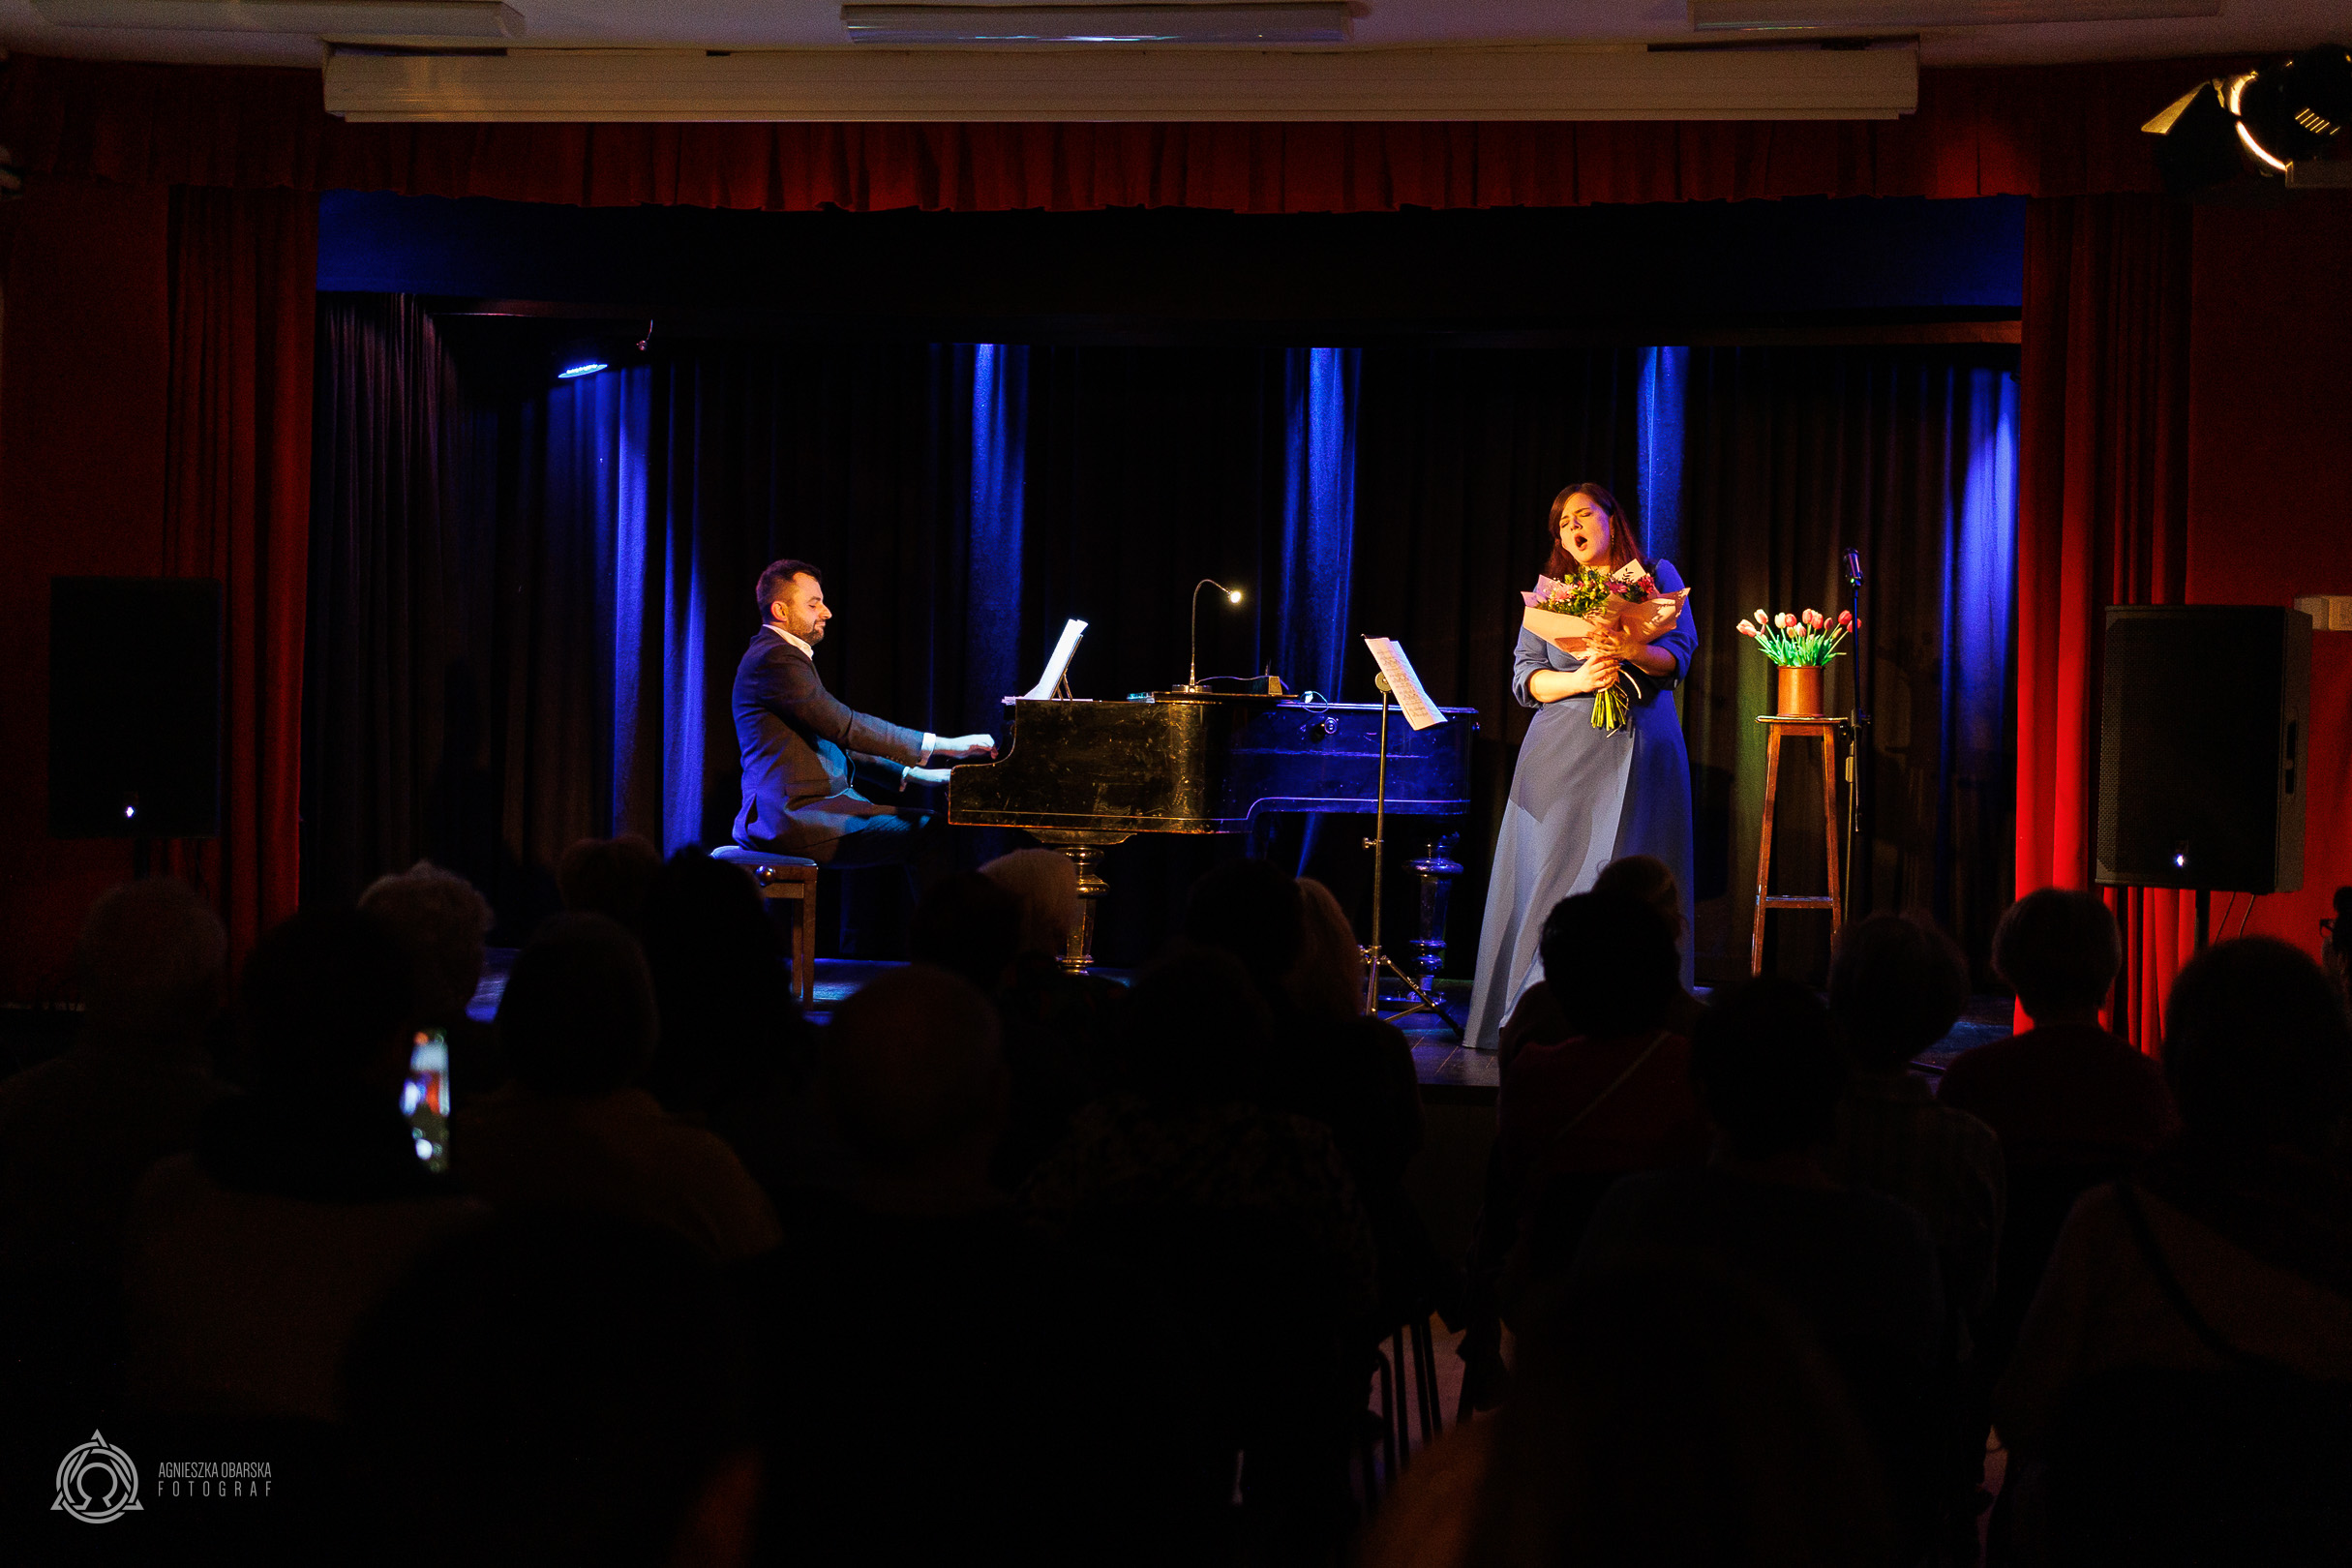 Ubrana w niebieską sukienkę kobieta śpiewa na scenie do muzyki granej na fortepianie, przez ubranego w garnitur mężczyznę.